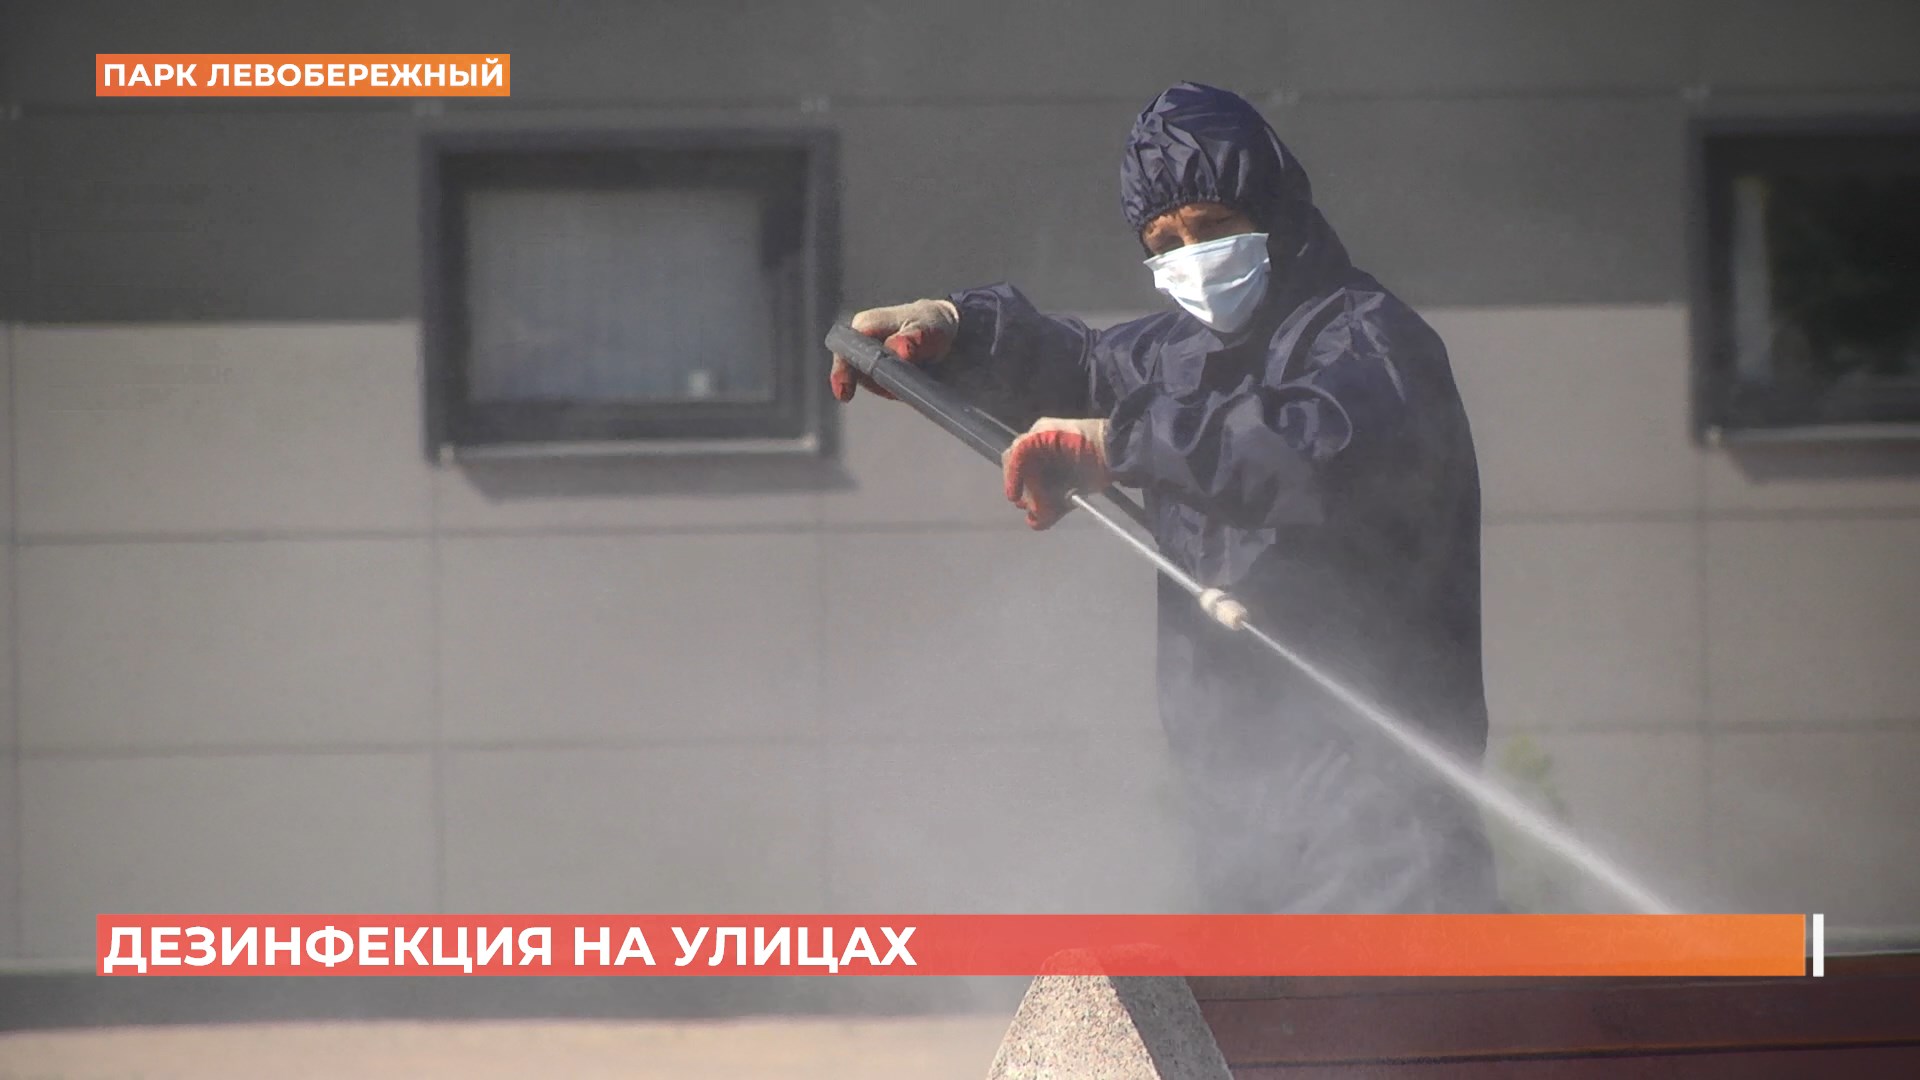 Антивирусная работа: спасатели дезинфицируют ростовские улицы и общественные места